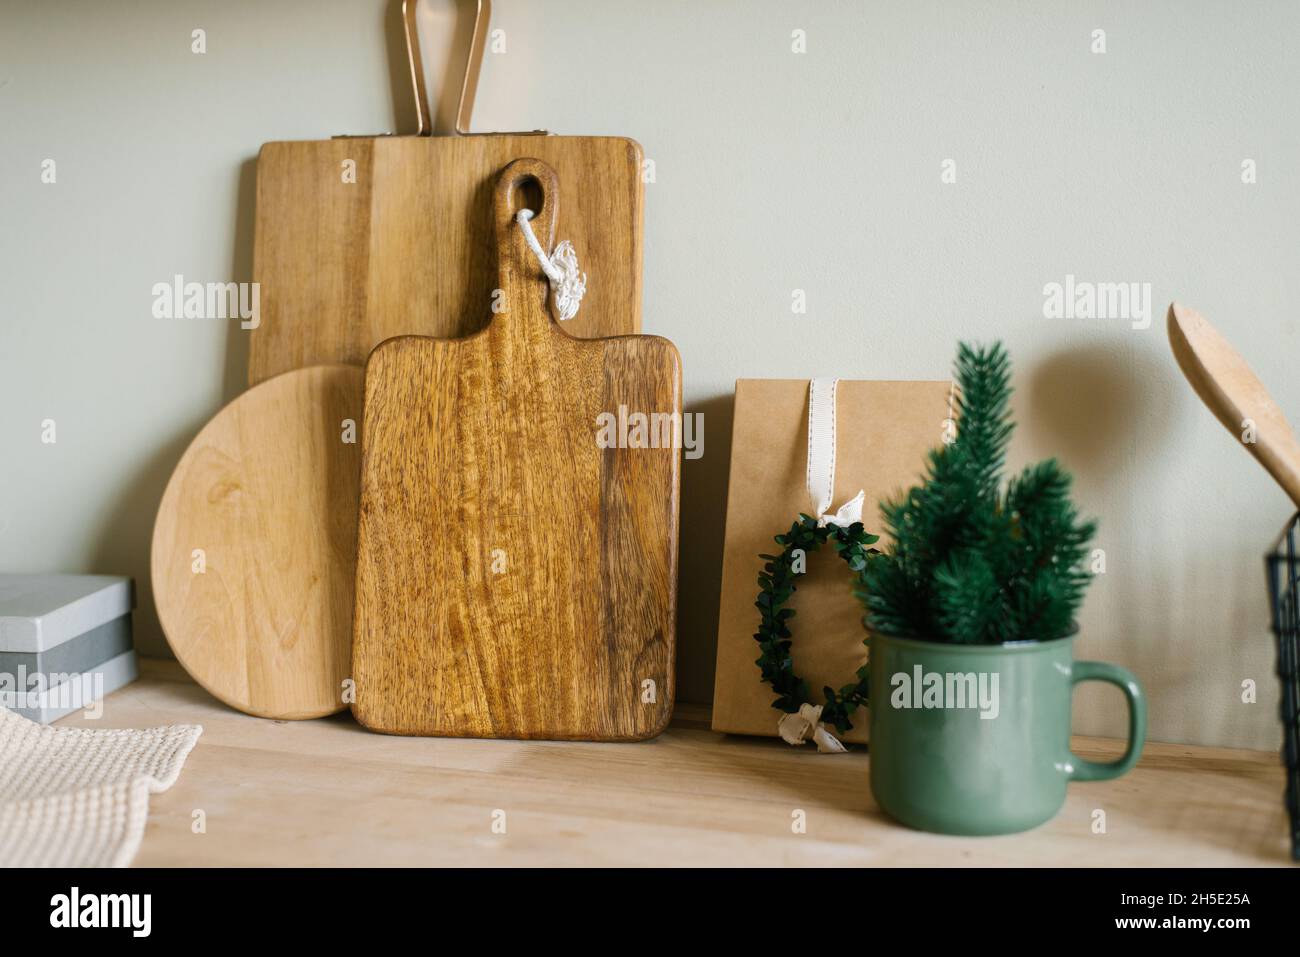 Arbre de Noël dans une tasse en métal vert et planches à découper en bois dans le décor de la cuisine scandinave Banque D'Images